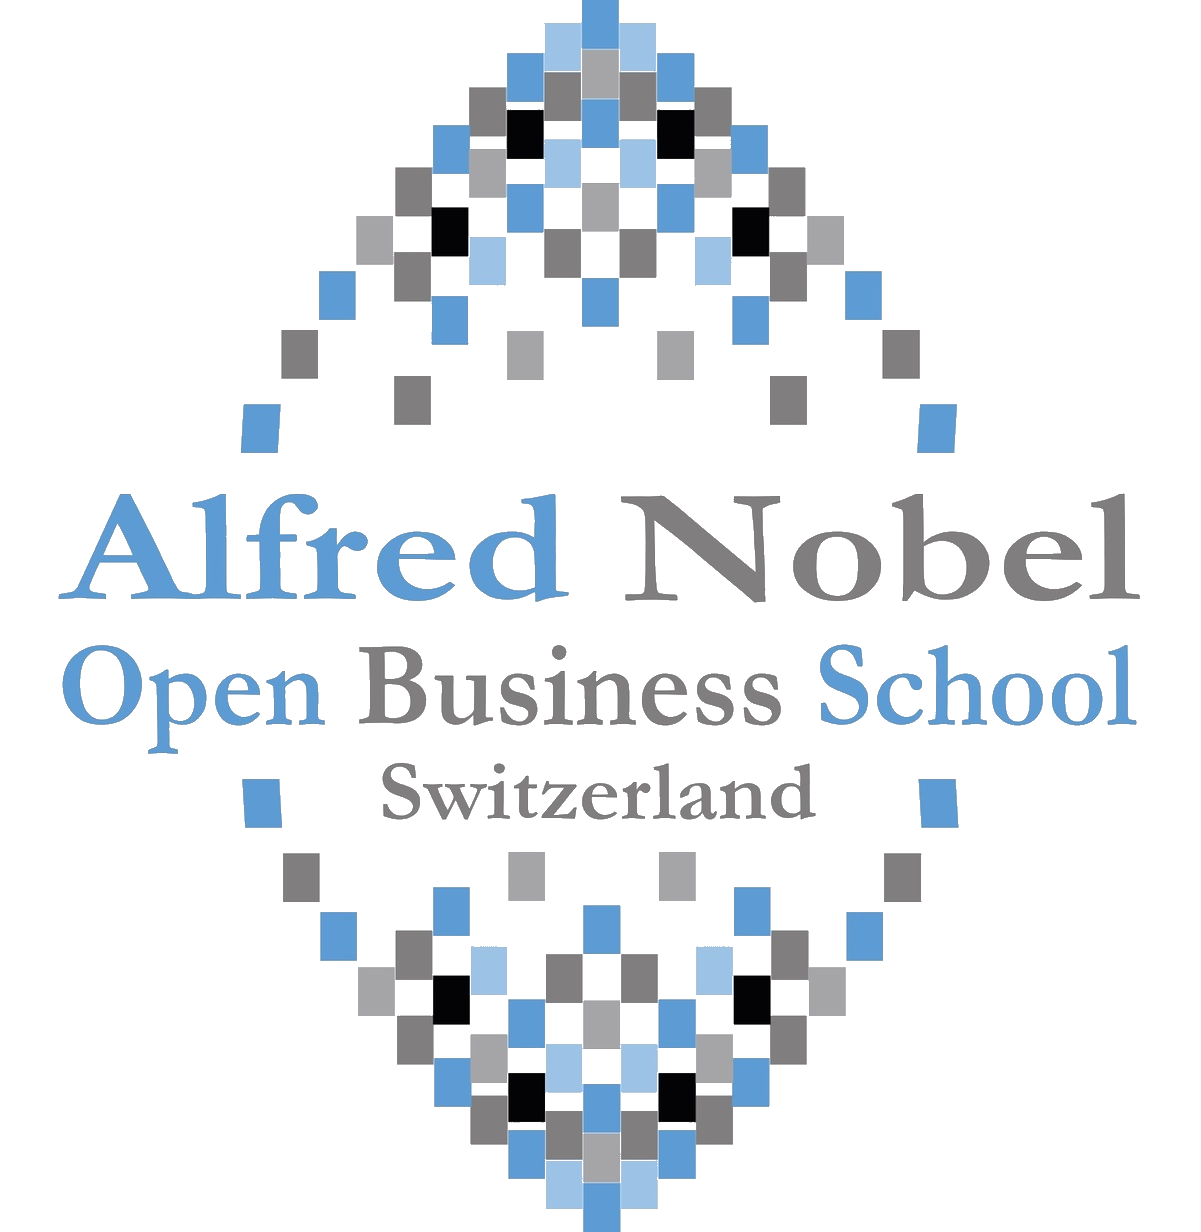 Alfred Nobel Open Business School Schwitzerland